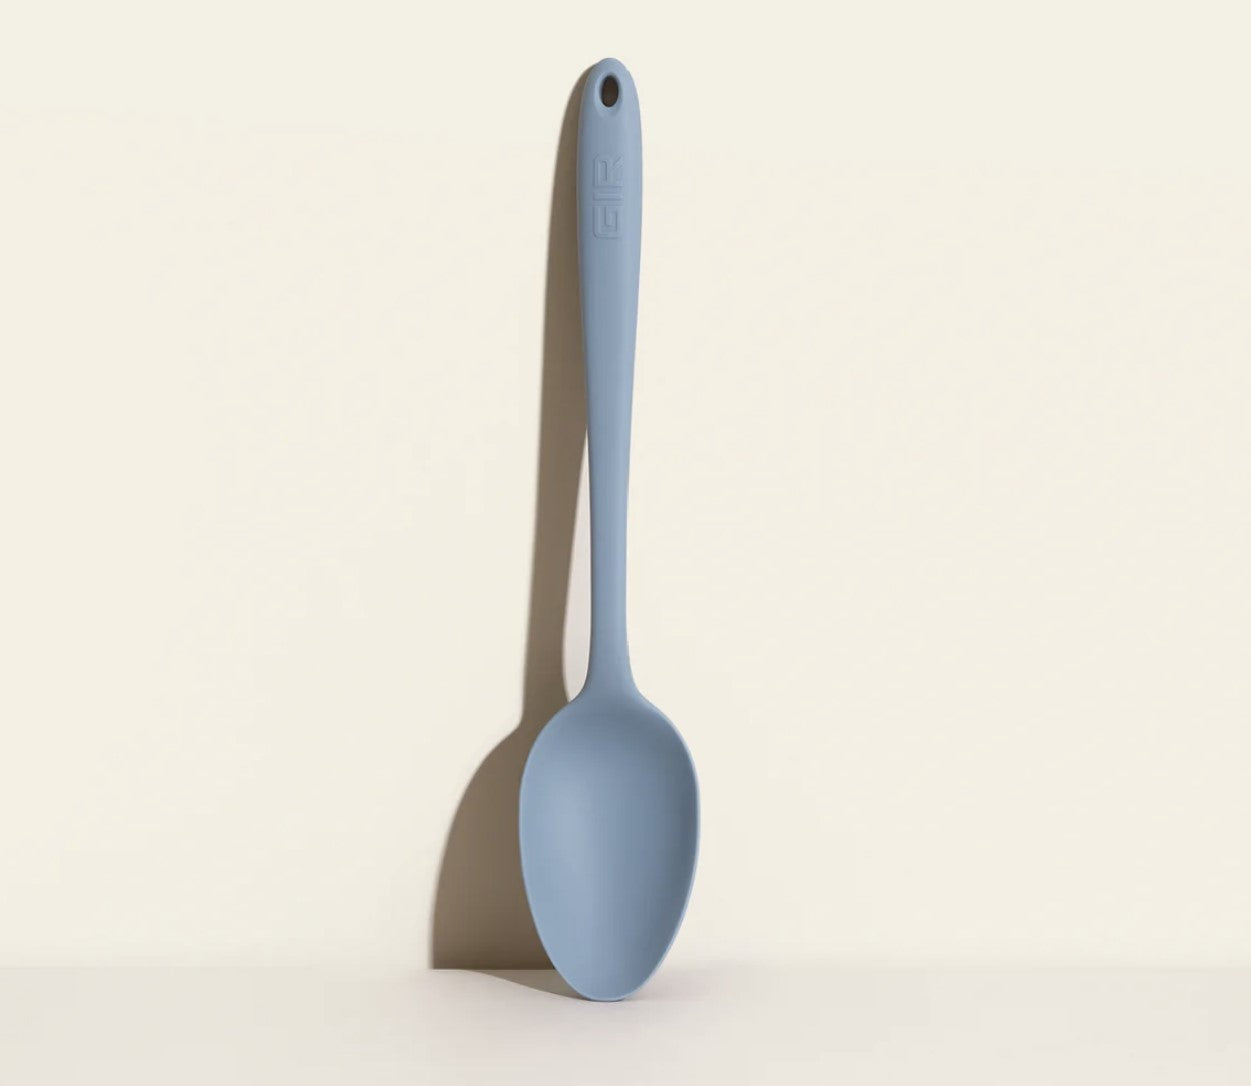 GIR Mini Spoon-Accessories-GIR-Black-Carbon Knife Co